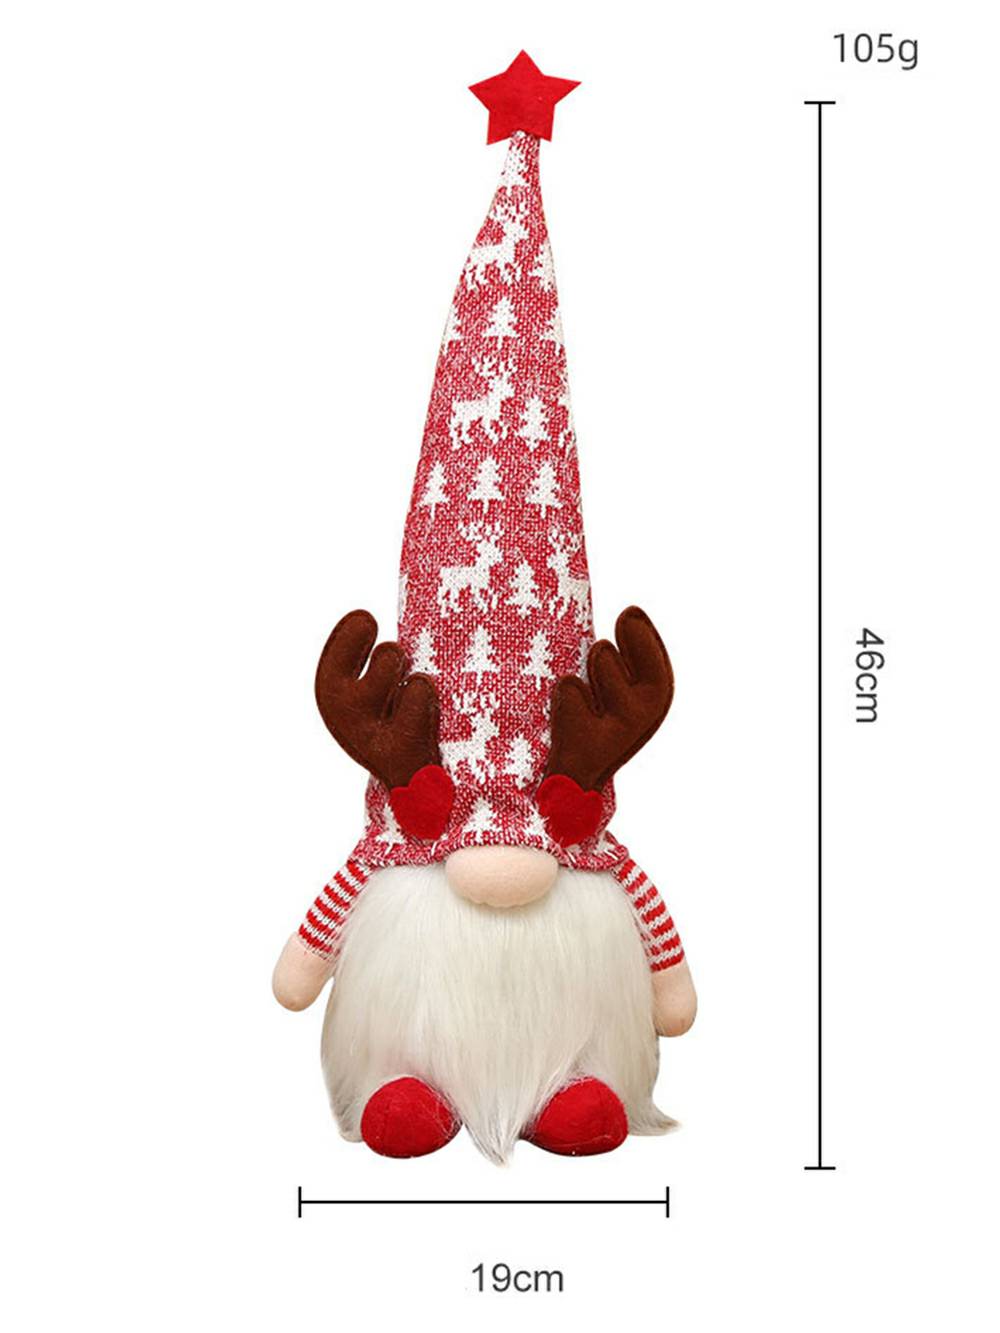 Muñeco Rudolph del árbol de Navidad del reno del elfo de la felpa de la Navidad